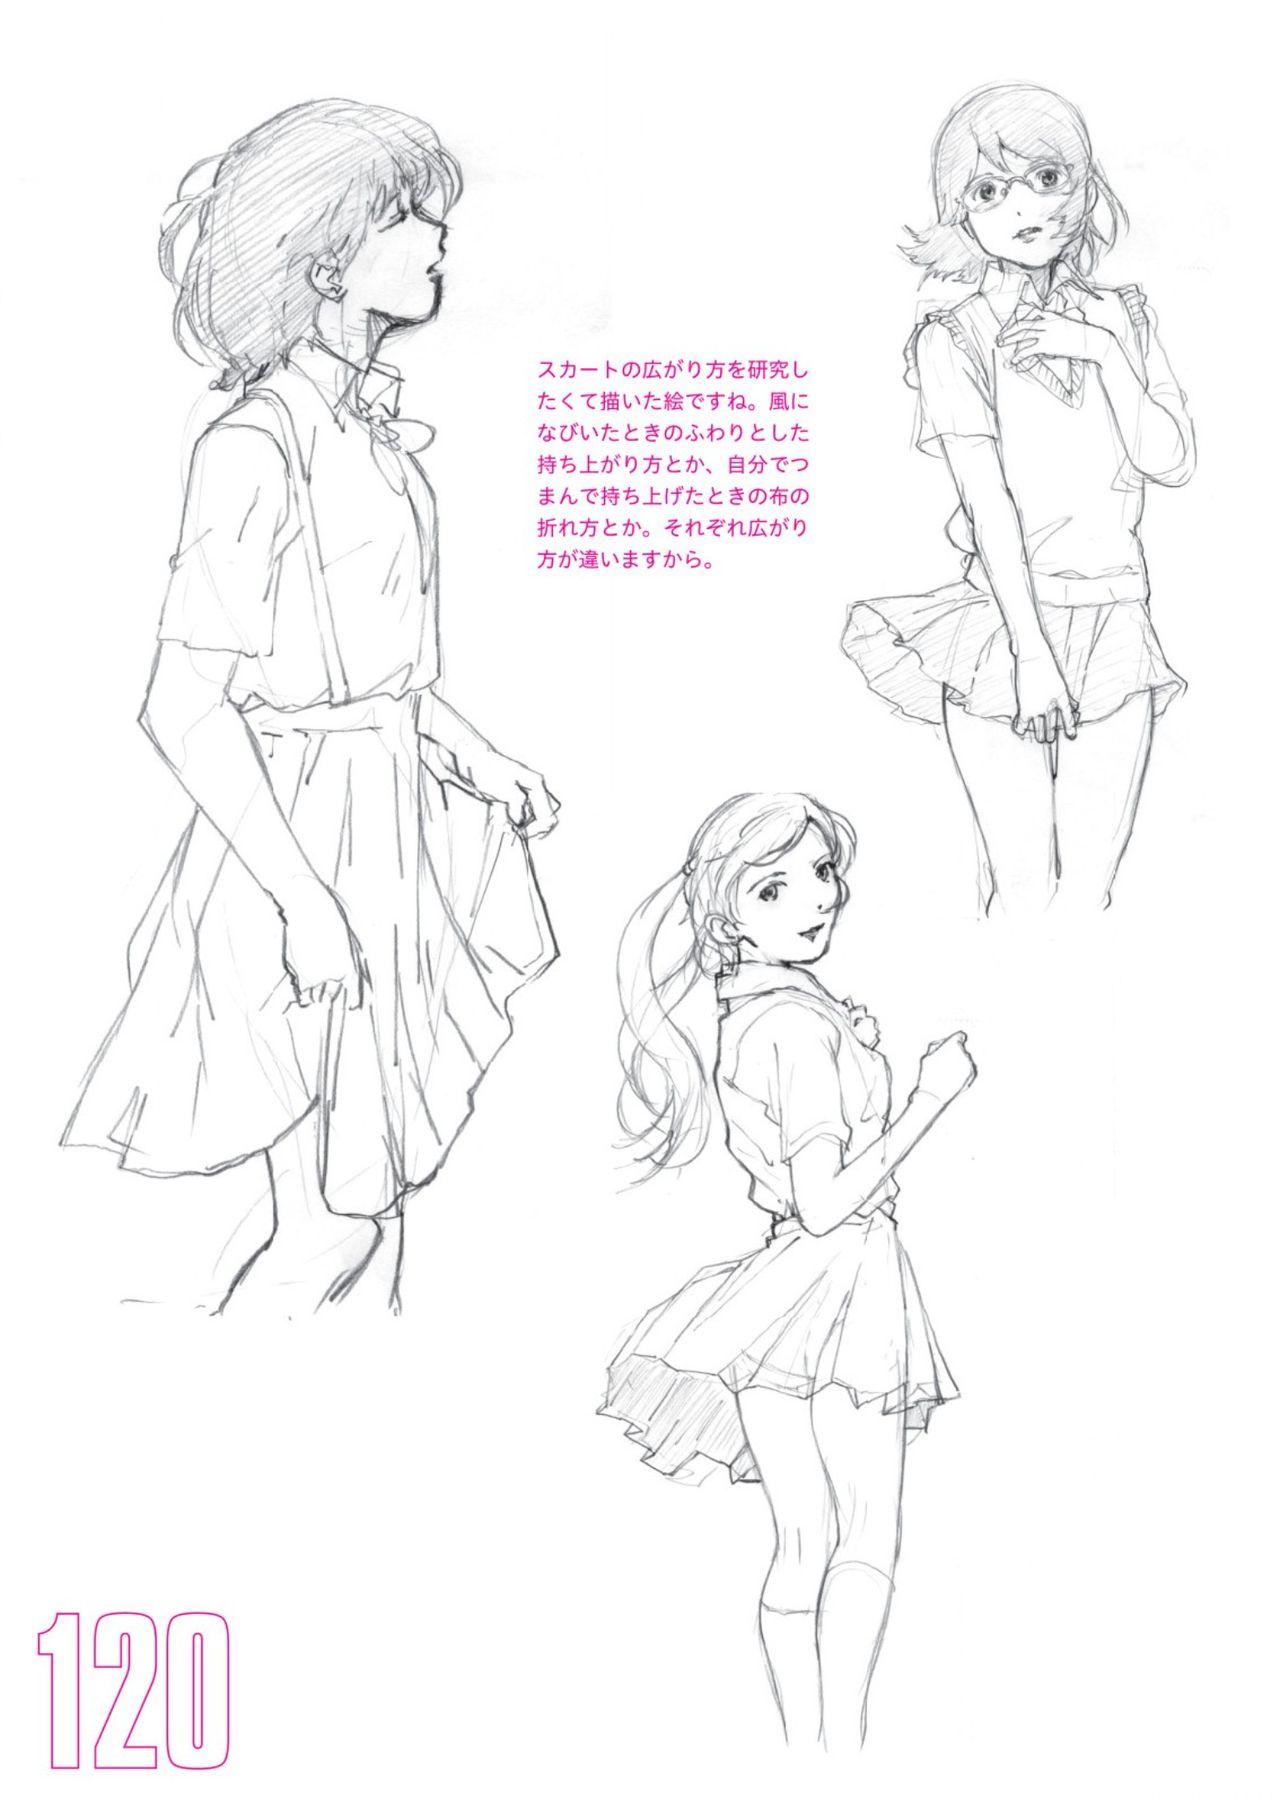 Toru Yoshida Tips for drawing women in 10 minutes 270 Uniforms 121